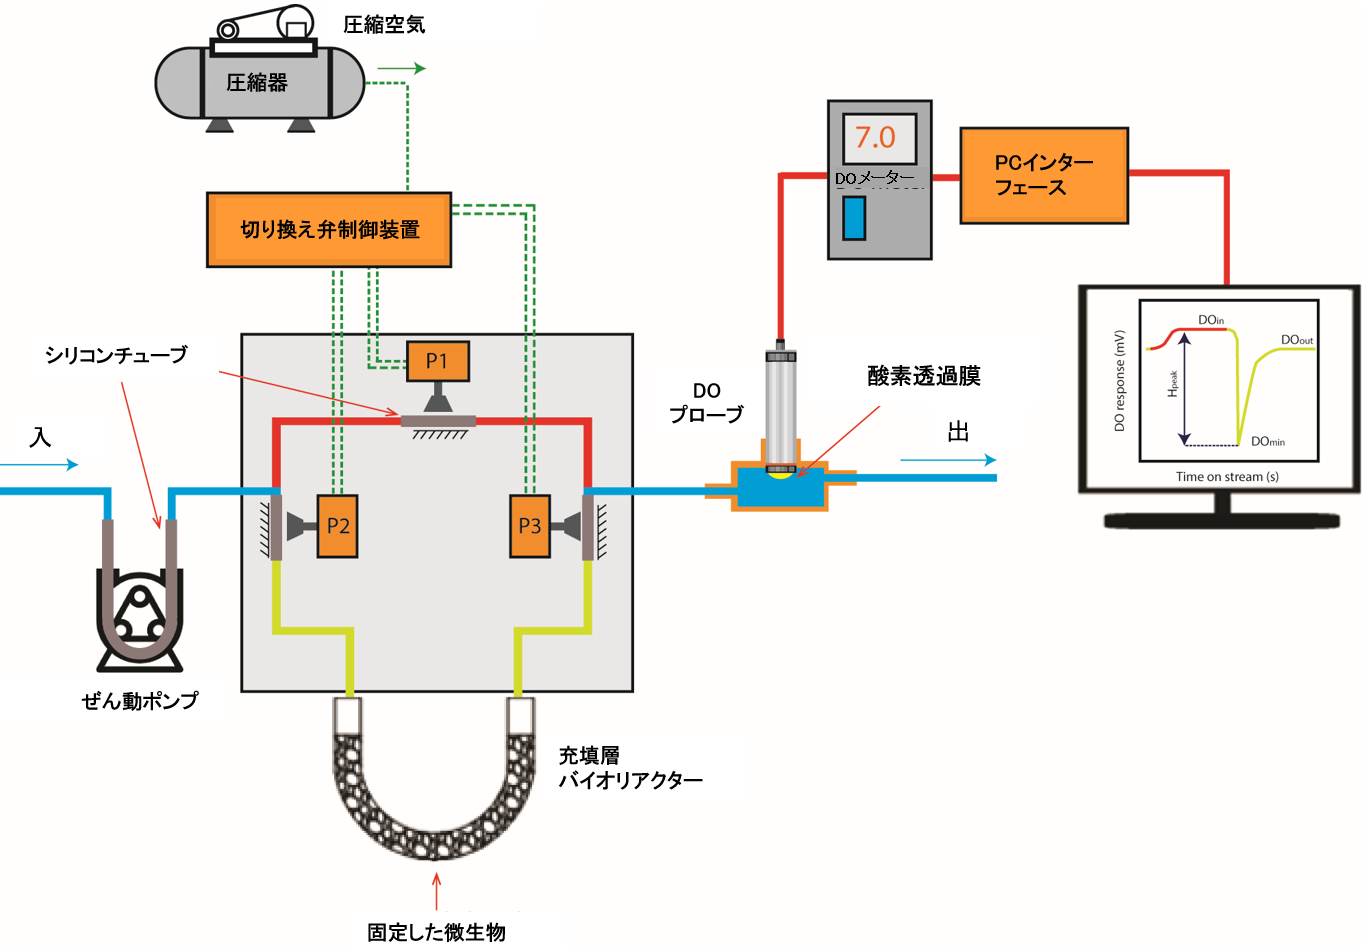 充填層バイオリアクター(PBBR)を基本とするBOD検出システムの概略図